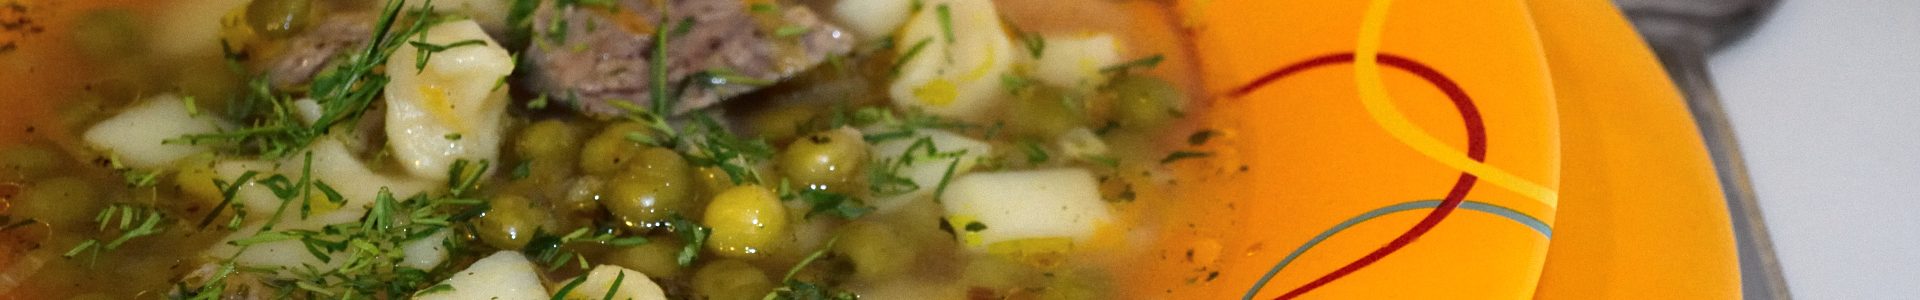 Суп с галушками и зеленым горошком от МастерШефа